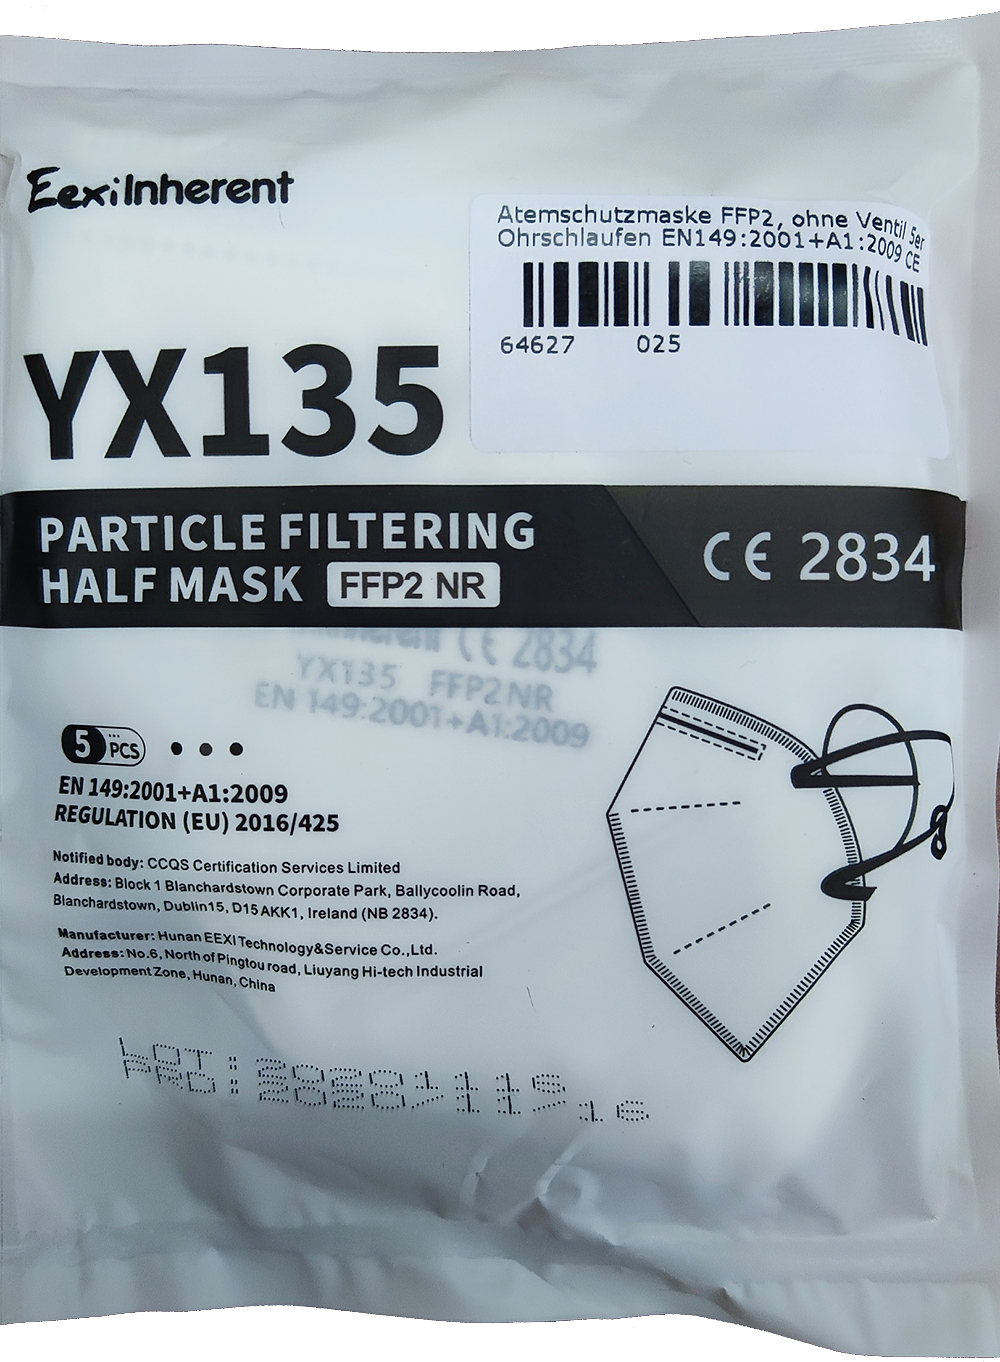 5 FFP2 Atemschutzmasken ohne Ventil, zertifiziert nach EN149:2001+A1:2009, CE zertifiziert